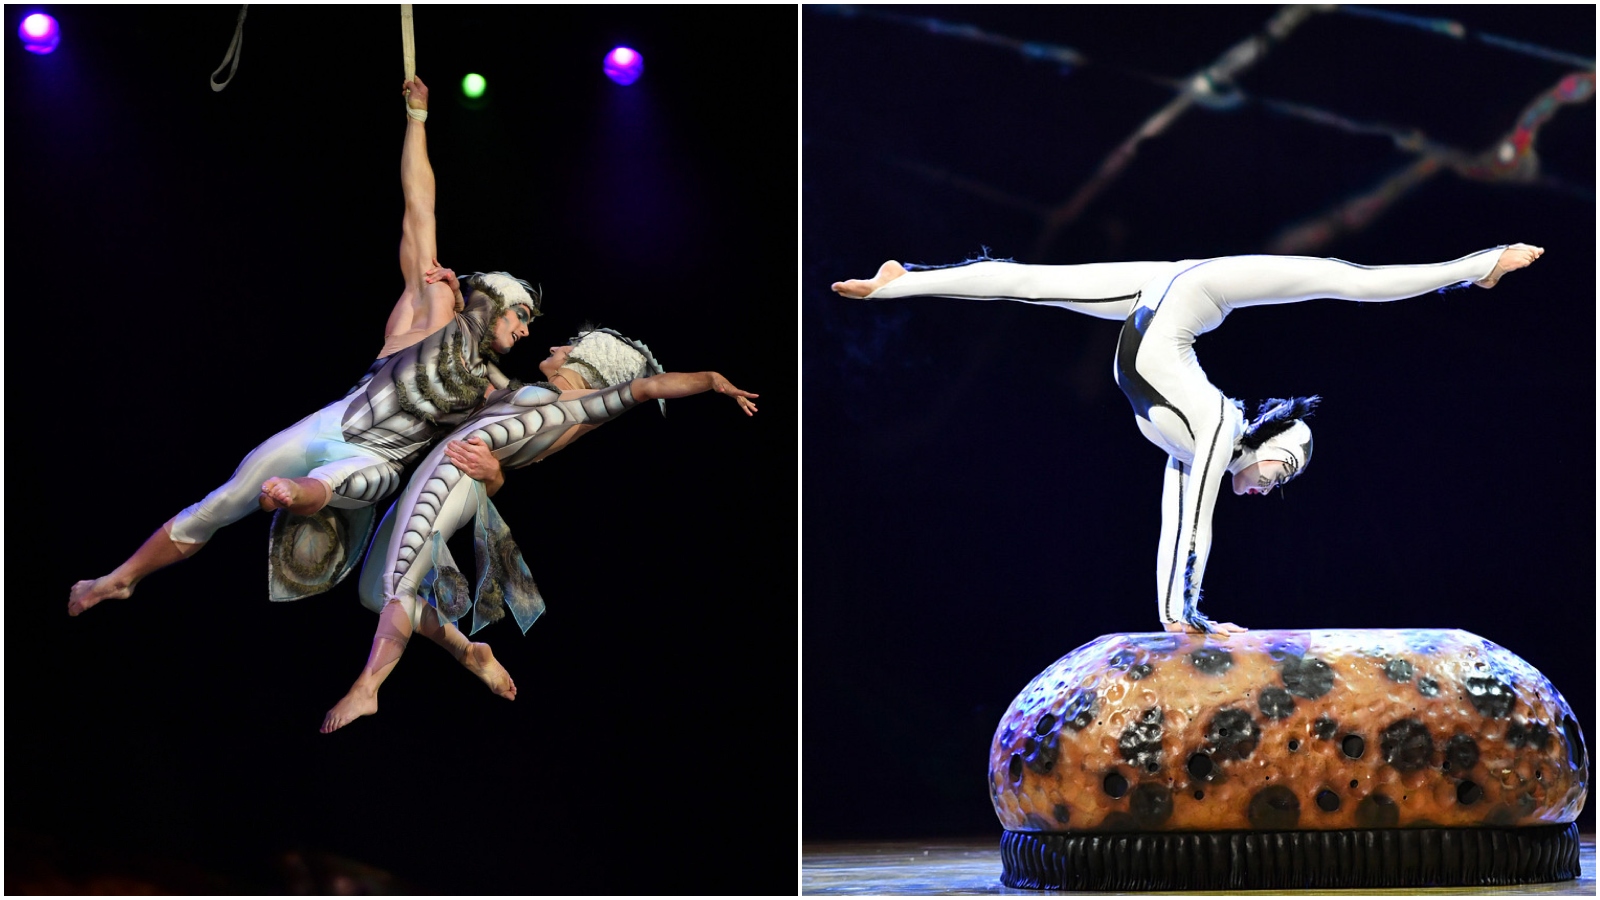 Cirque du Soleil ponovno u Zagrebu sprema akrobatski spektakl! Razgovarali smo s umjetničkom direktoricom